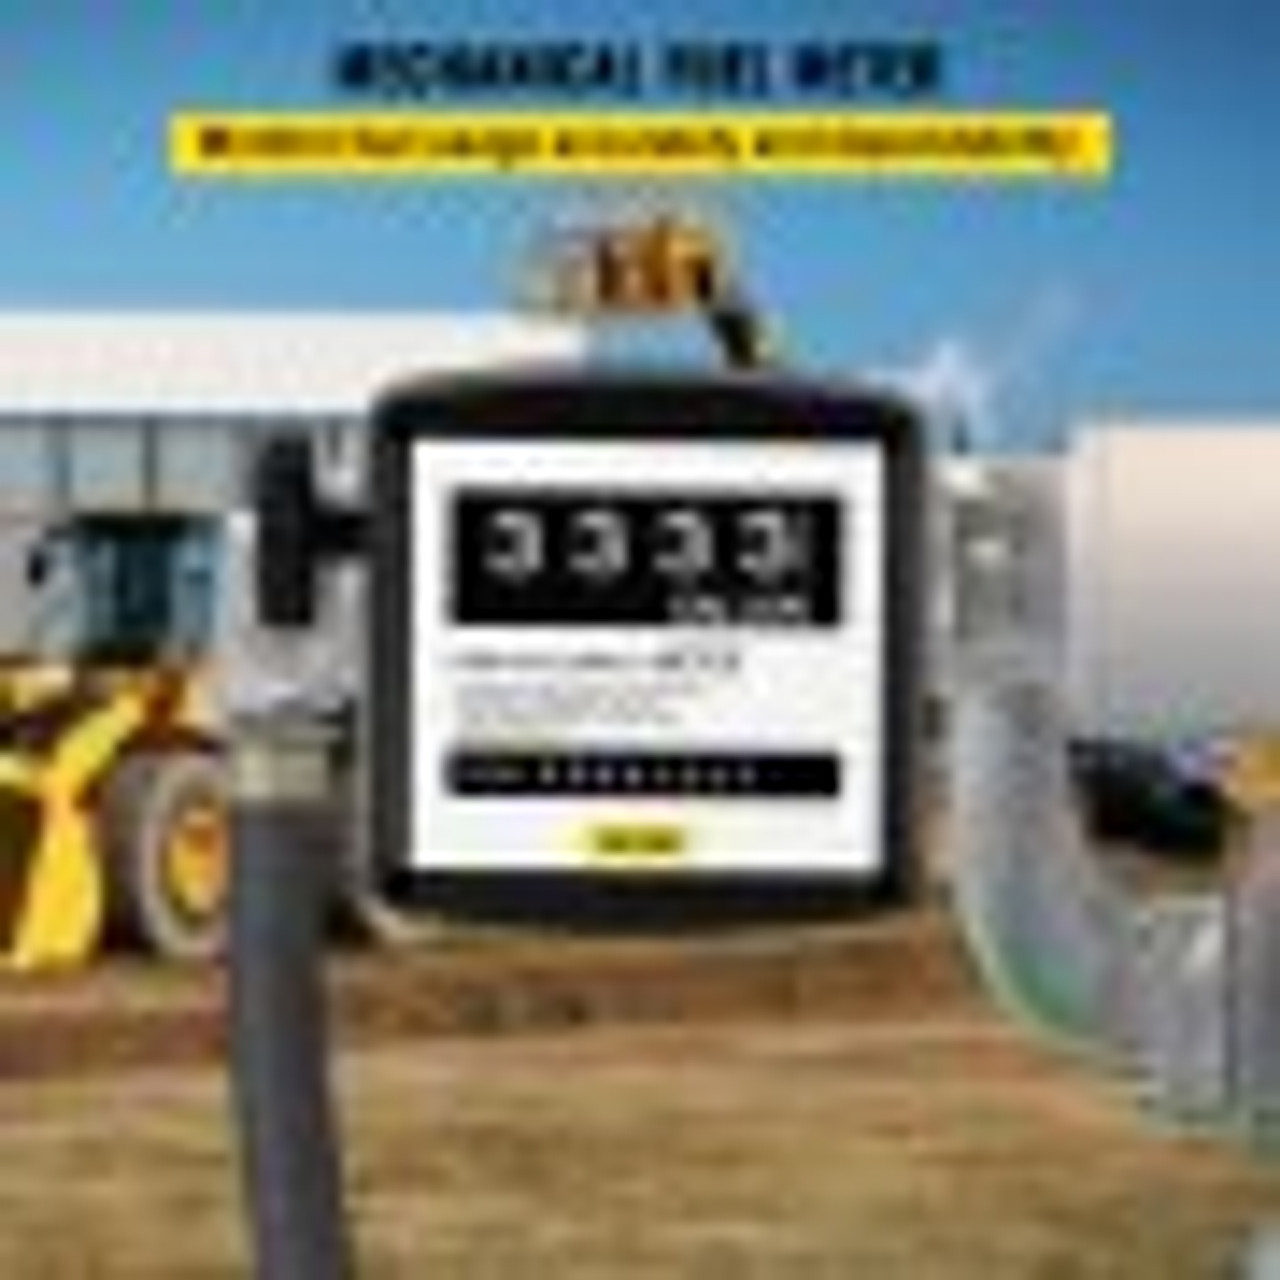 Mechanical Fuel Meter 5 to 30 GPM Digital Diesel Fuel Flow Meter Black Fuel Meter Diesel for All Fuel Transfer Pumps 10Bar